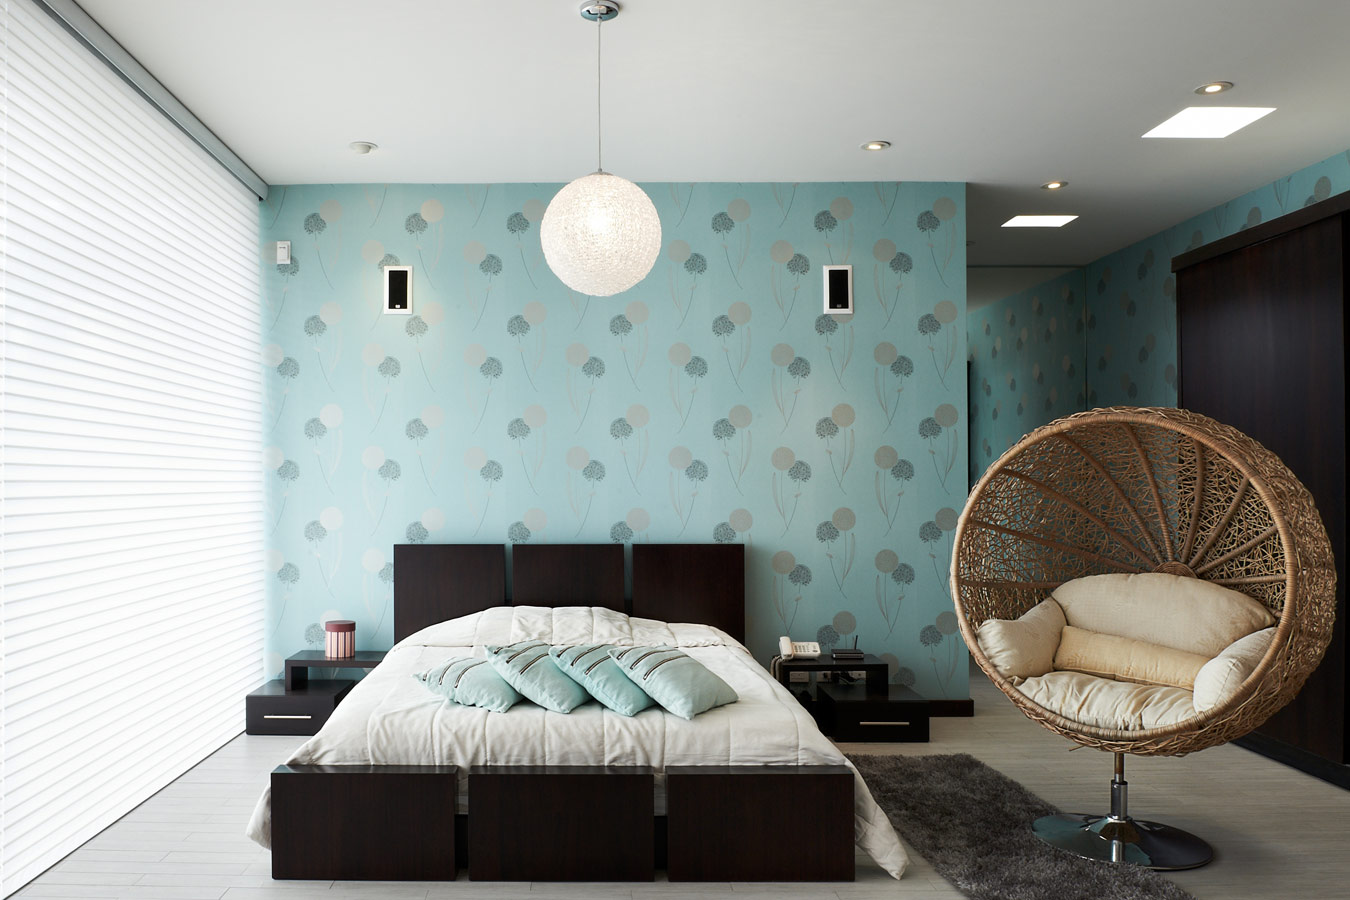 Avondeten Trillen Meyella Moderne slaapkamer: Ideeën & inspiratie